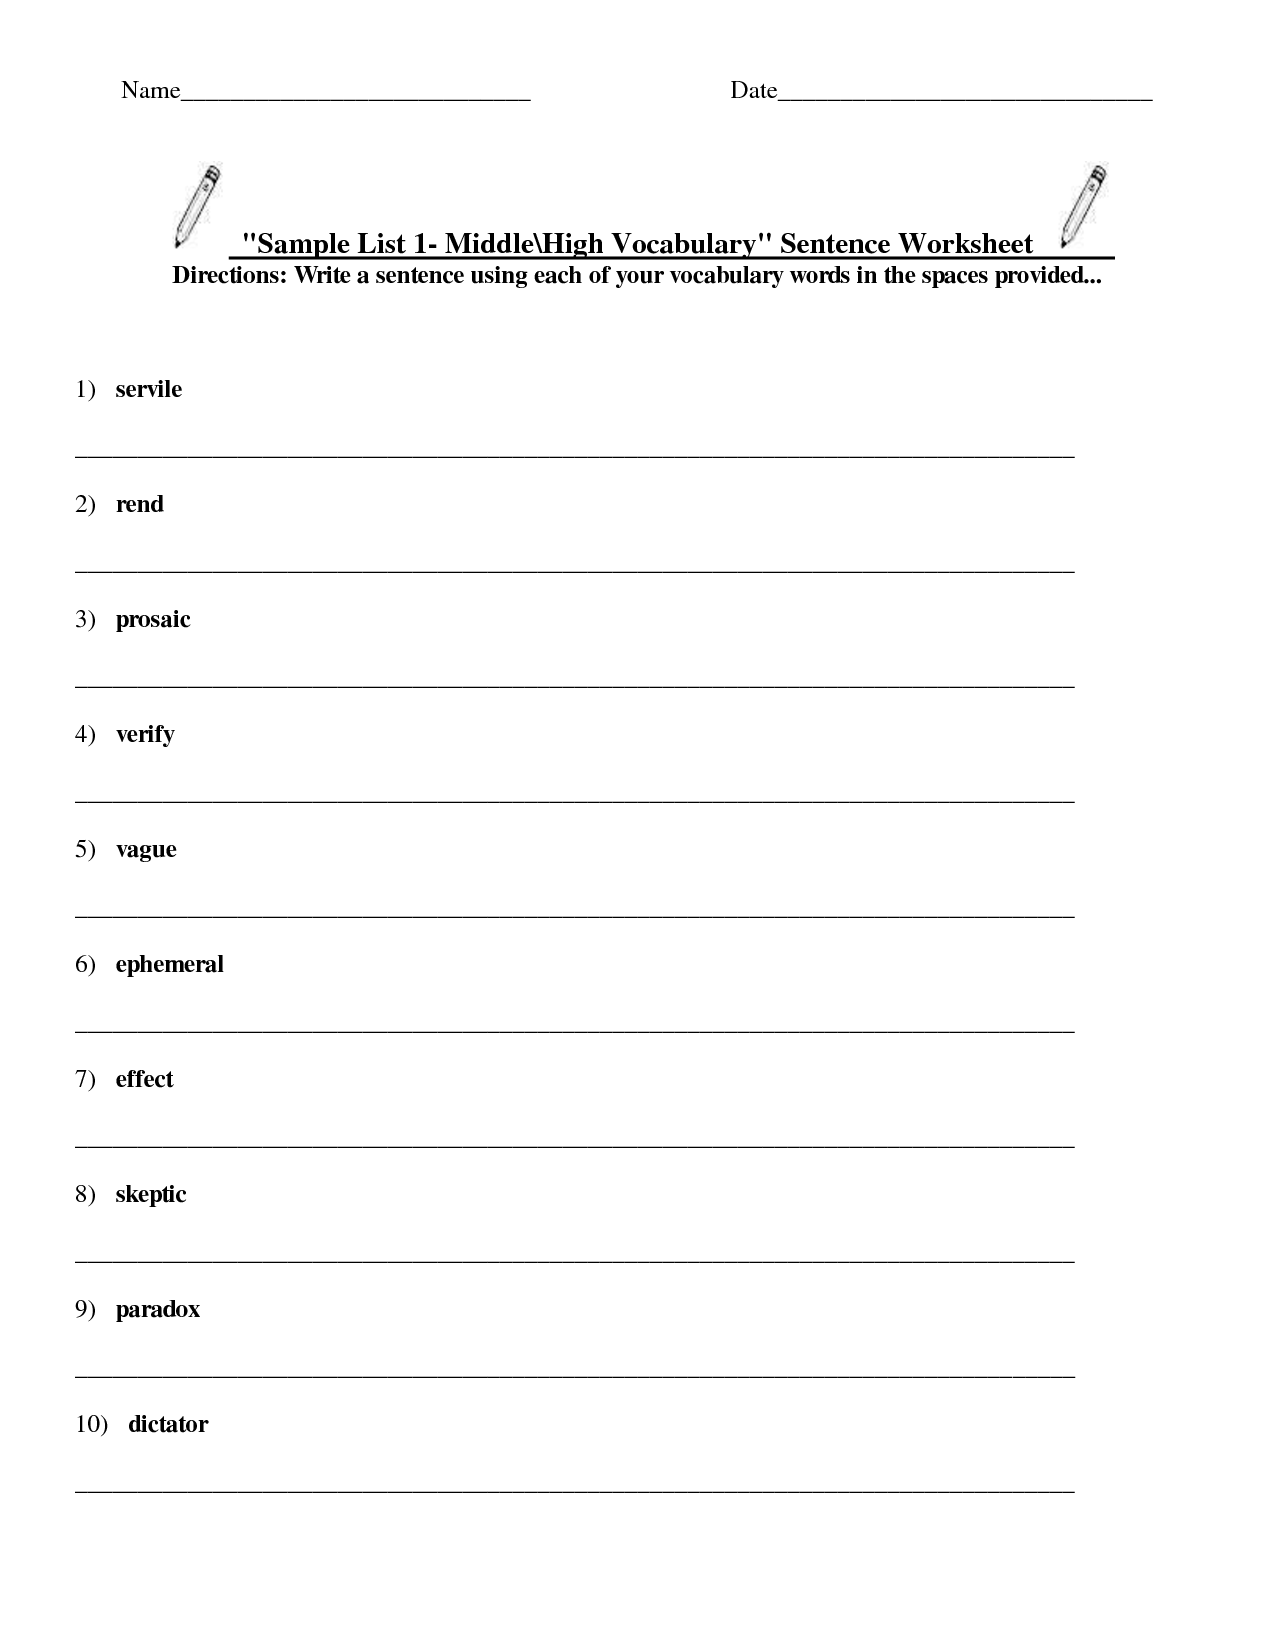 vocabulary-worksheets-vocabulary-worksheet-worksheet-ideas